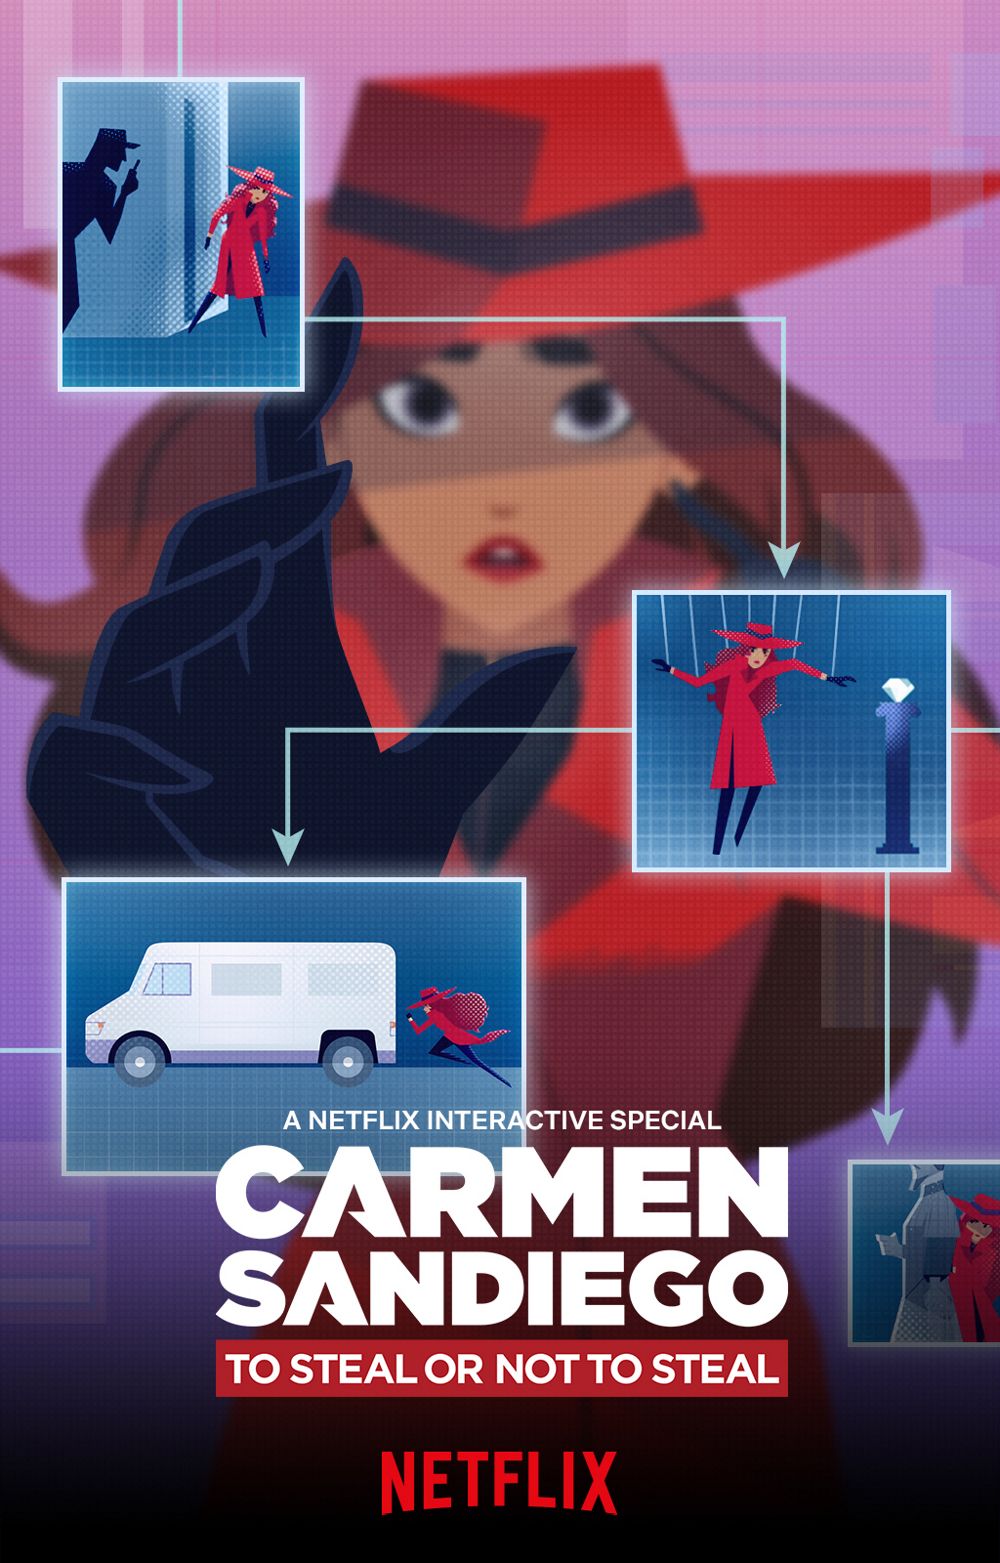 Xem Phim Nữ Đạo Chích Phần 4 (Carmen Sandiego Season 4)